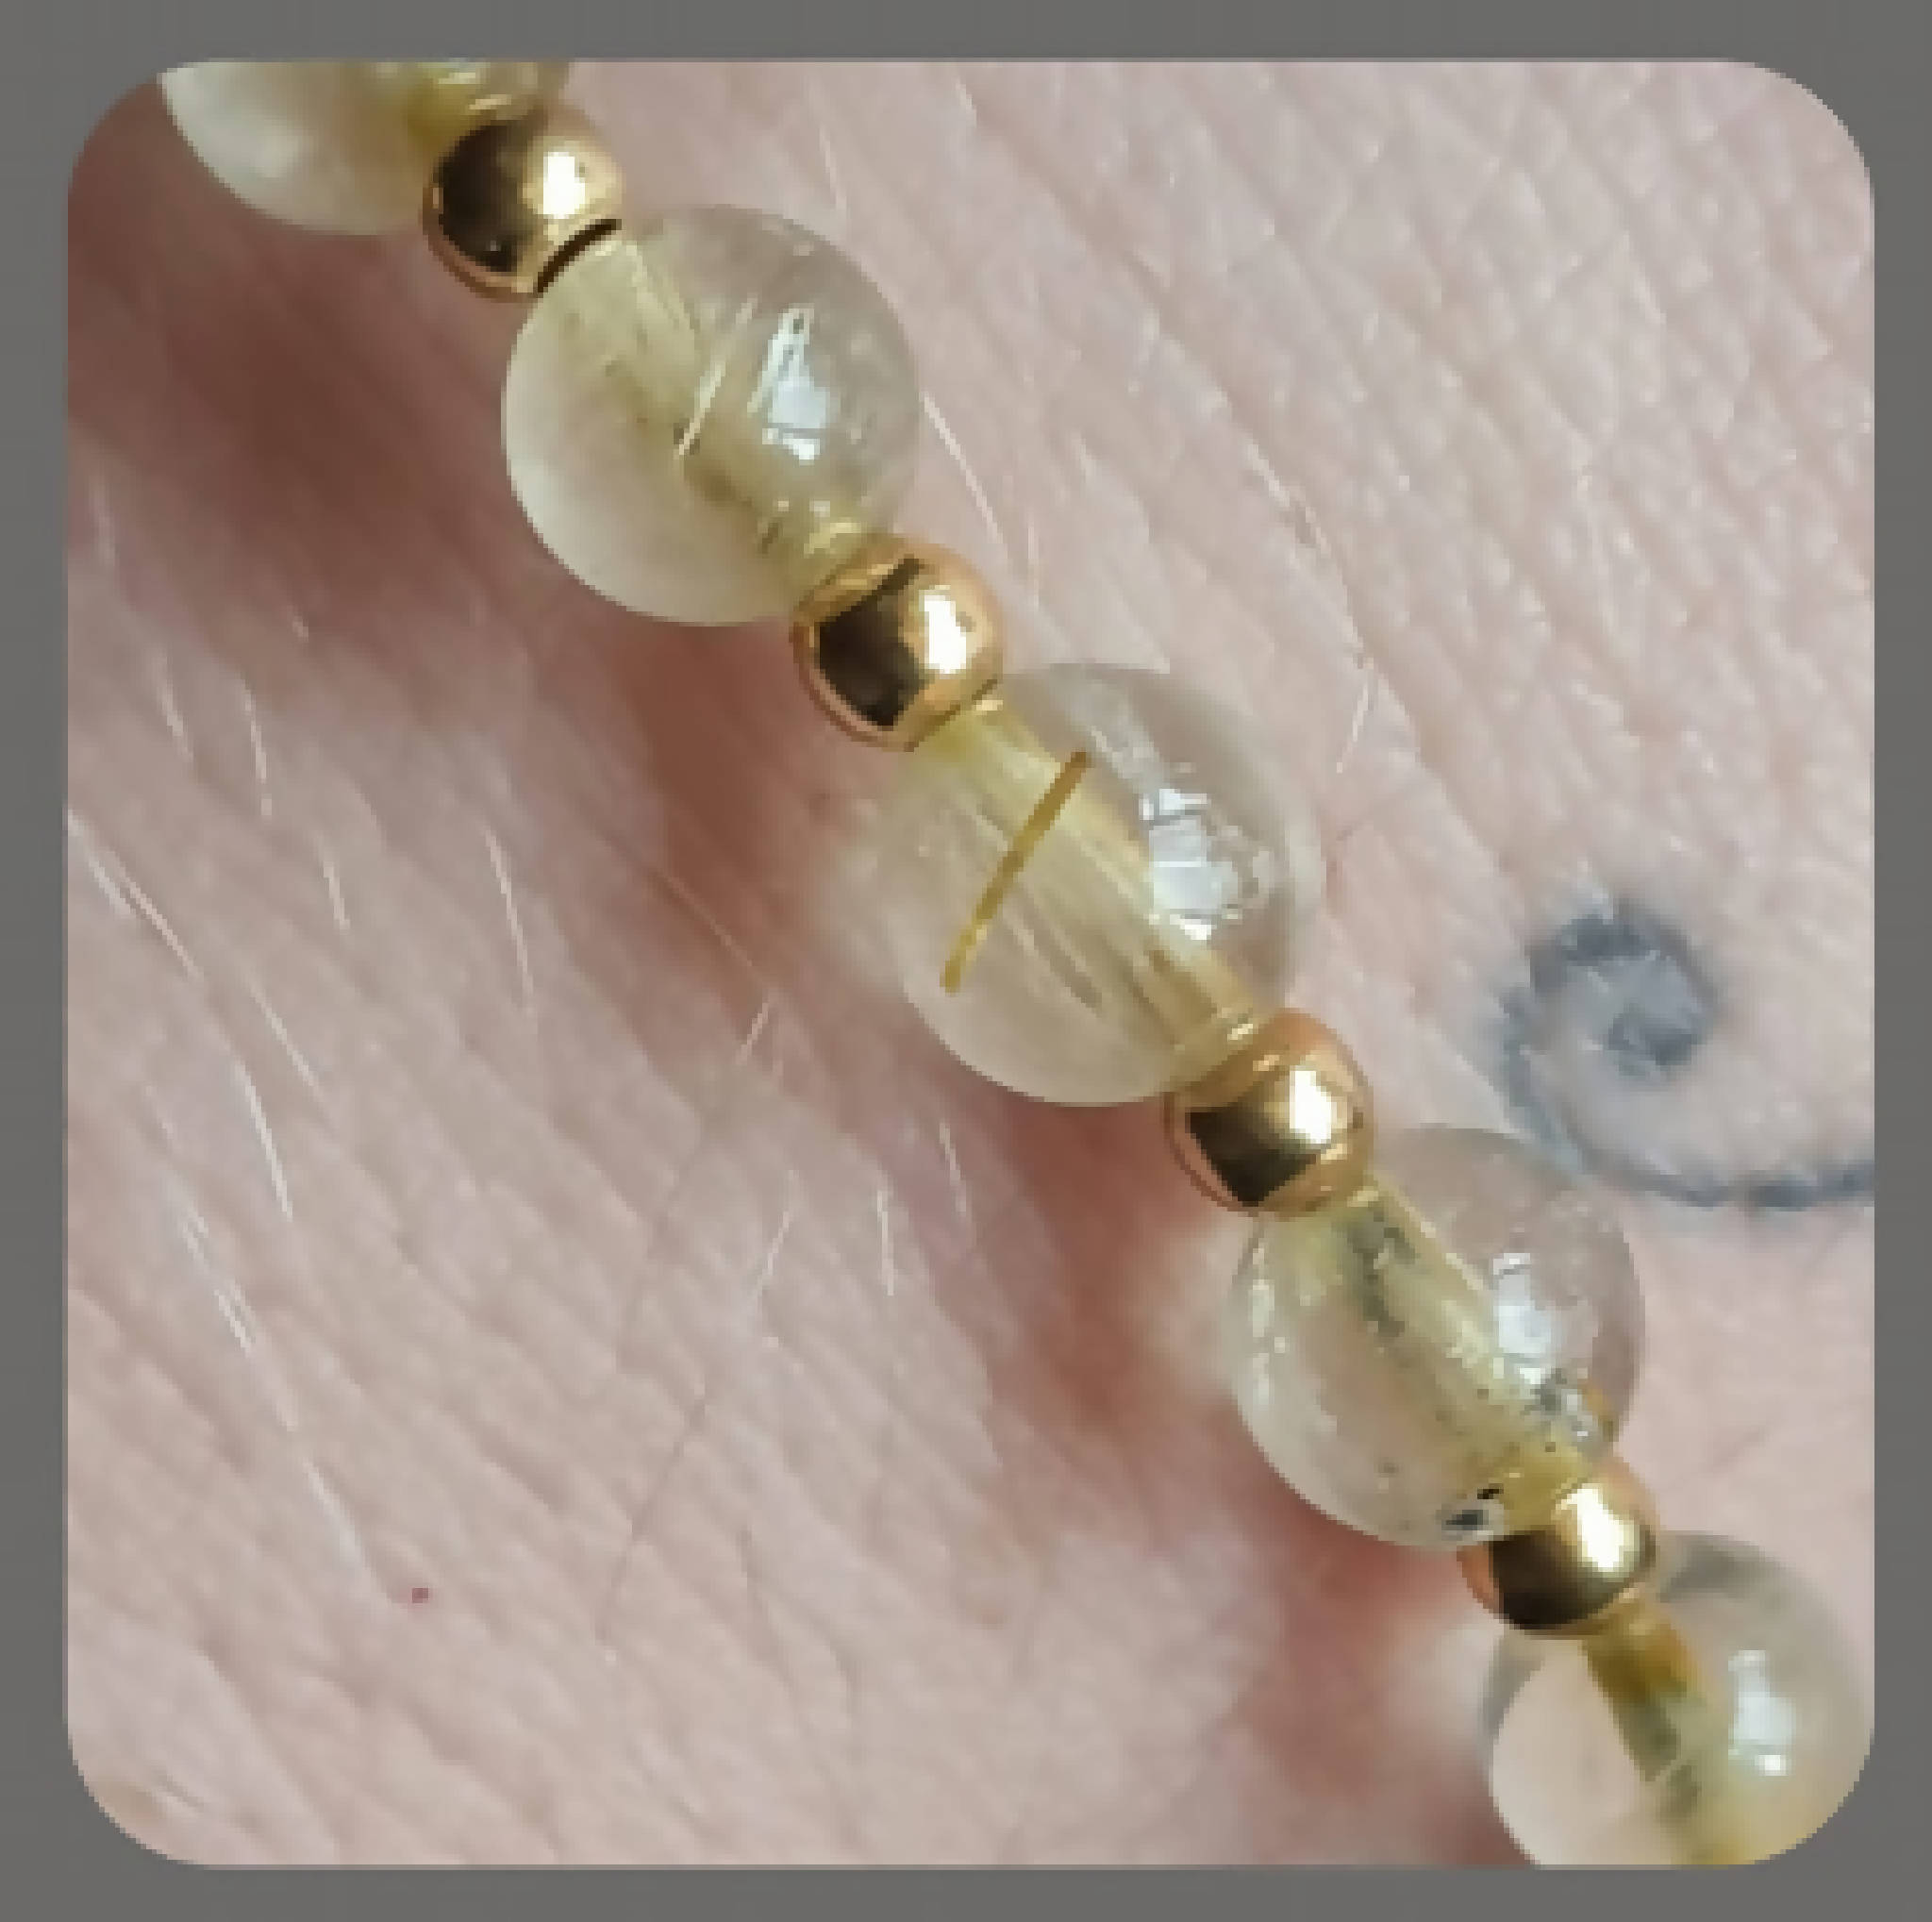 Golden Healer and vermeil (gold plated sterling silver) stacker bracelet